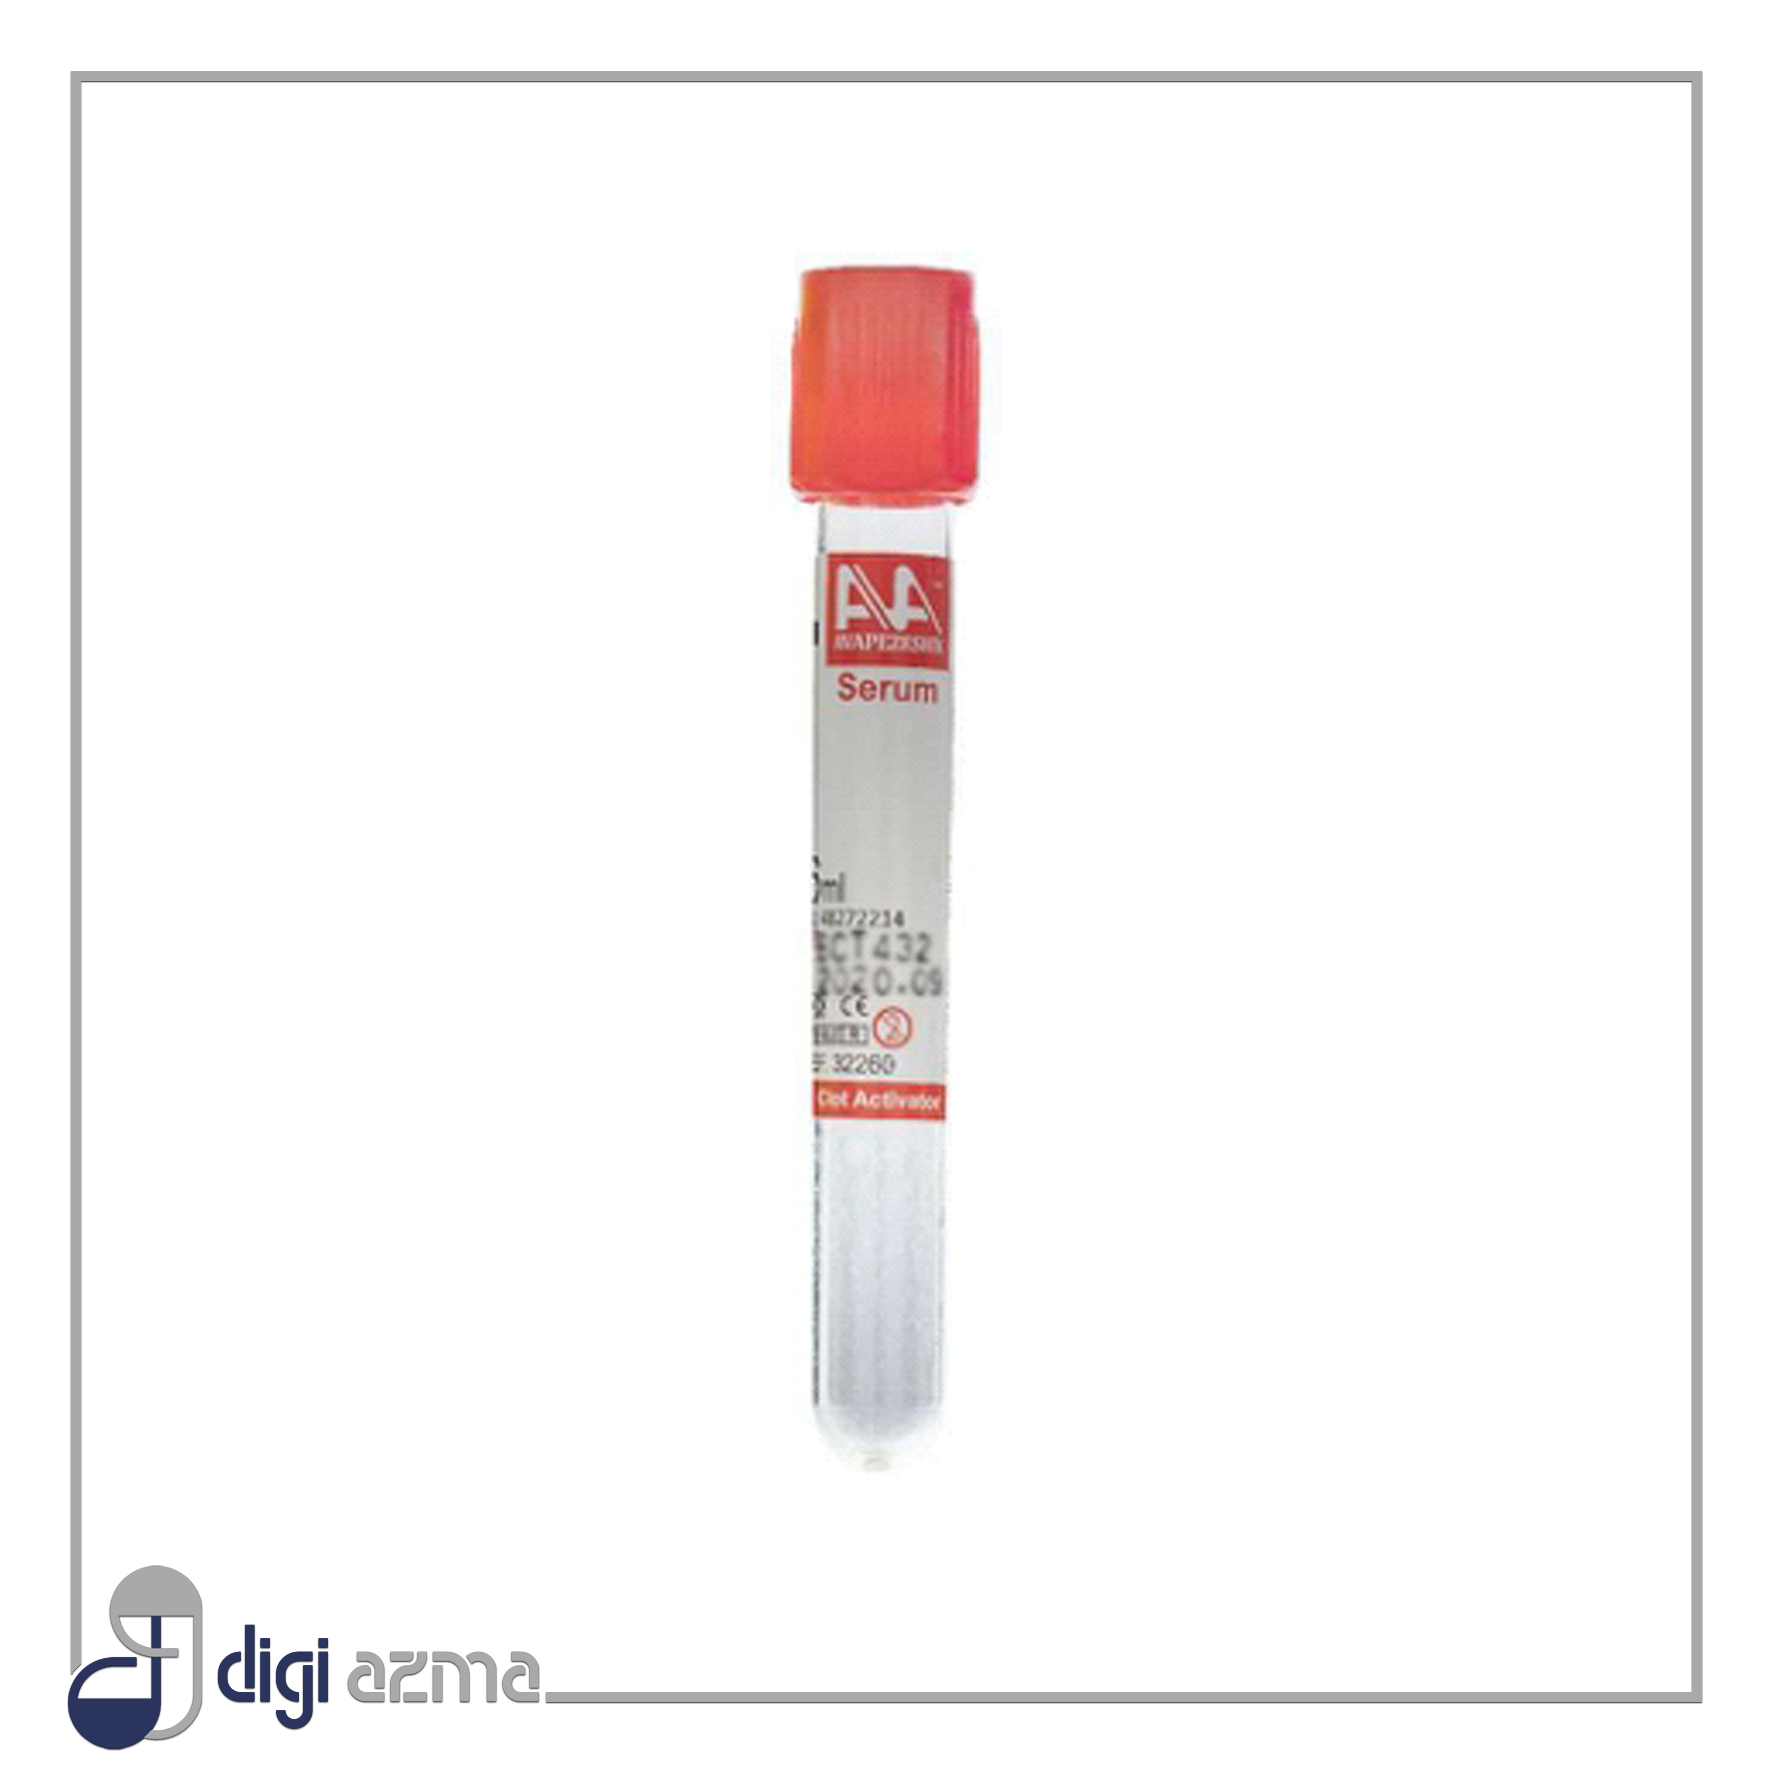 وله بدون خلأ خونگیری Serum شامل فعال کننده لخته یا Clot Activator است. از لوله خونگیری بدون خلأ لخته حاوی کلات اکتیویتور جهت جدا سازی سرم از نمونه خون و انجام تست های بیوشیمی، سرولوژی و ایمونولوژی استفاده می‌شود.